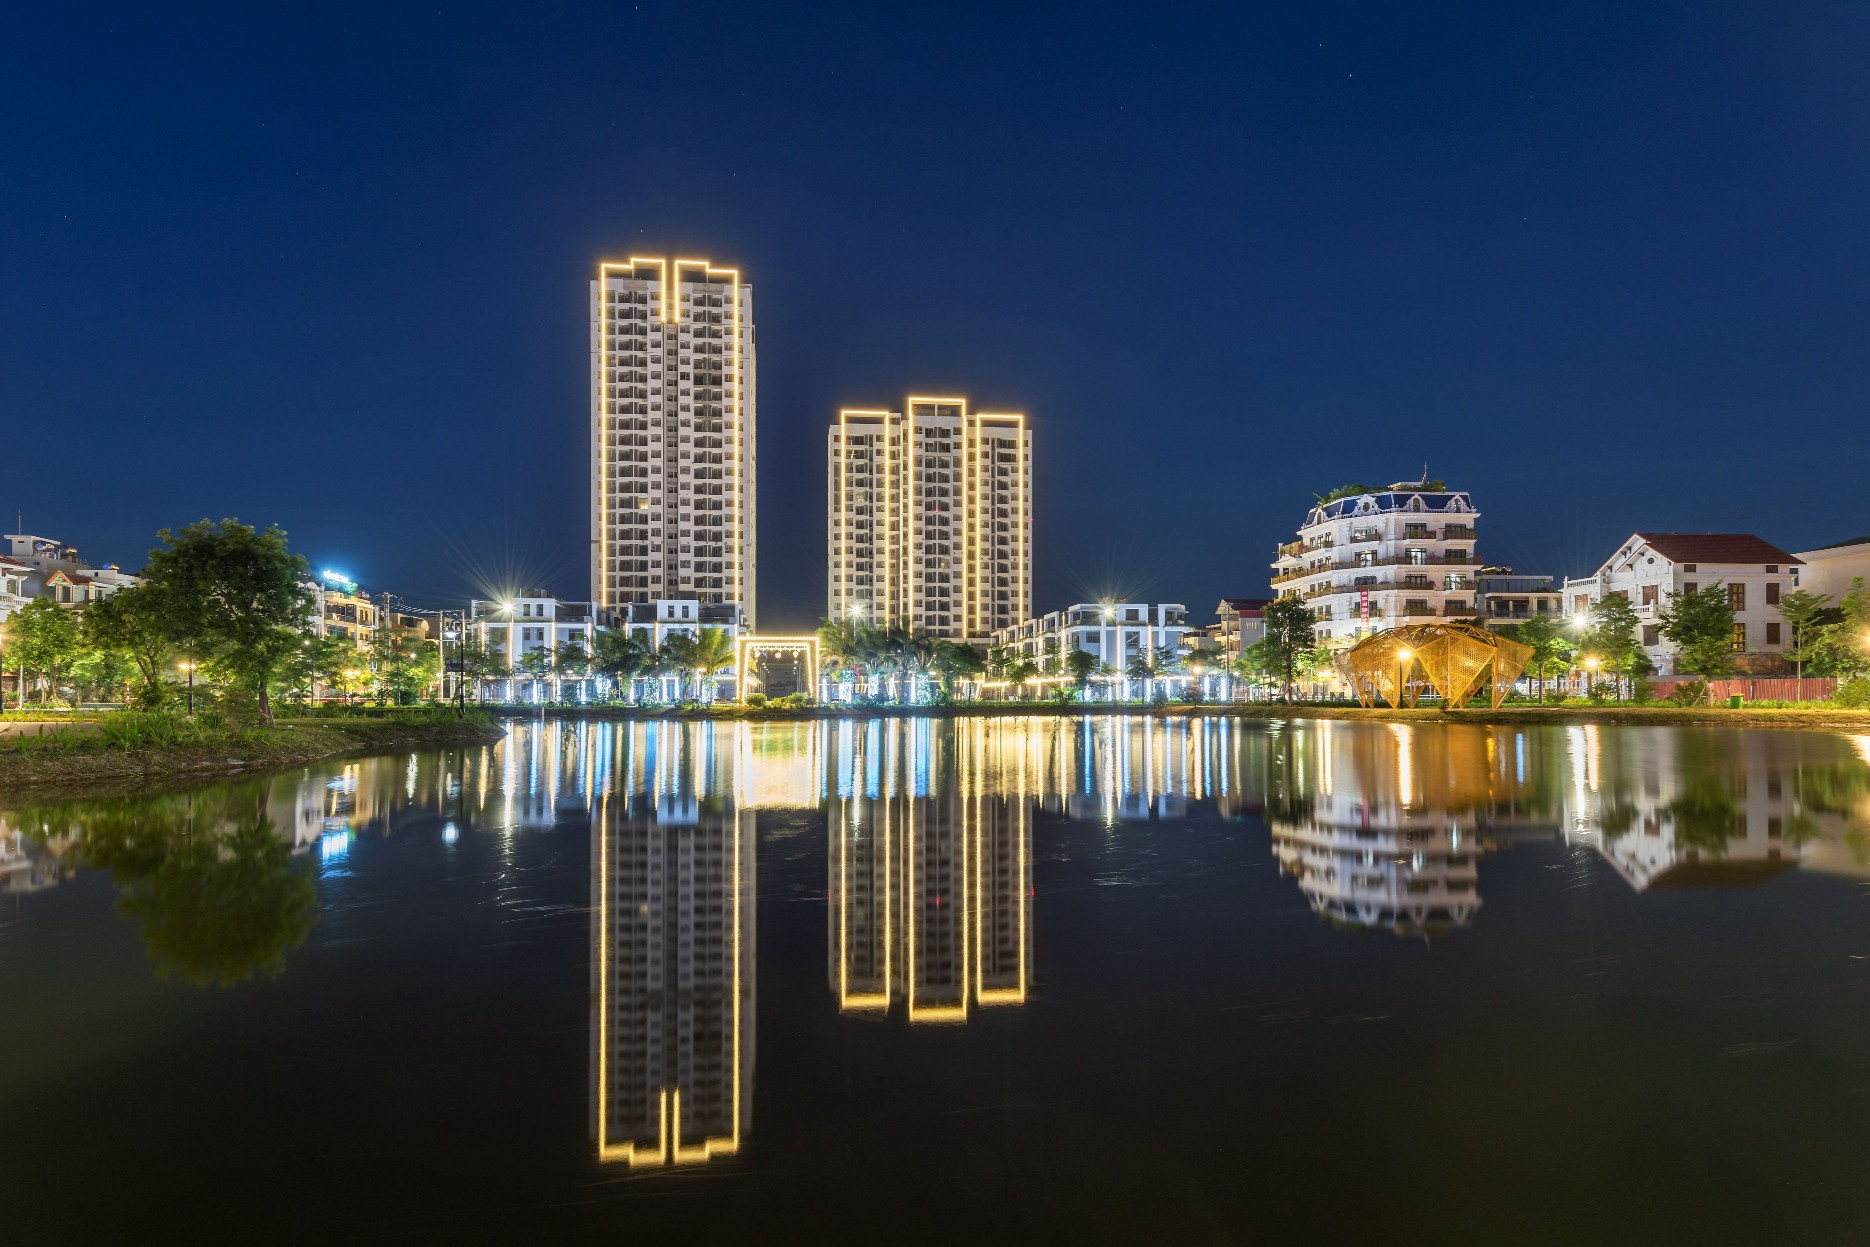 Cơ hội mua căn hộ tiện nghi ở Bắc Giang với số vốn gần 300 triệu đồng